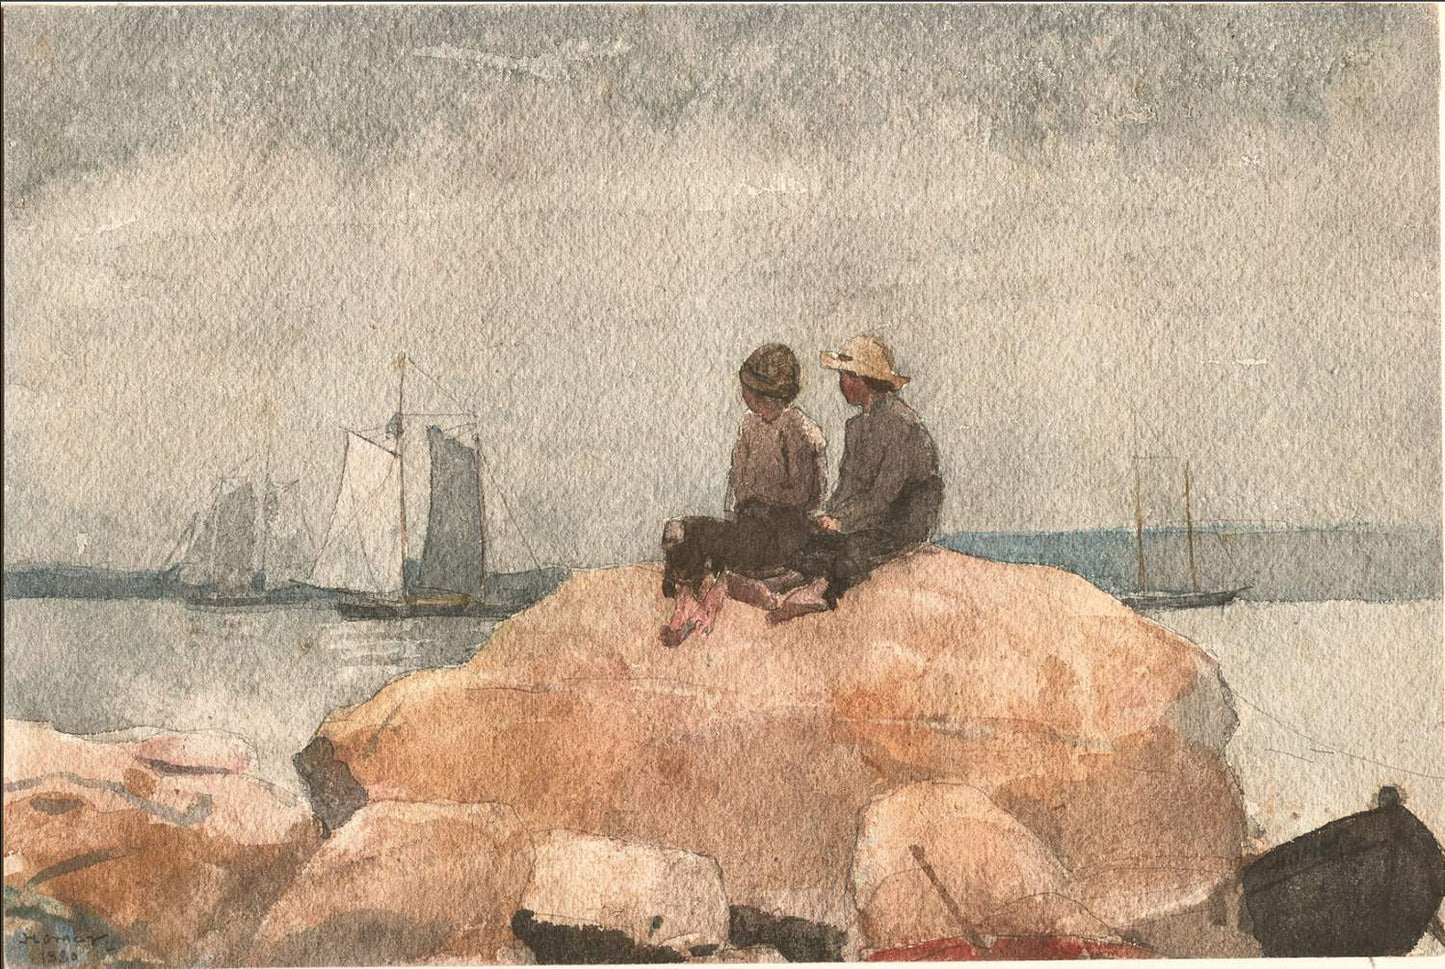 Two boys watching schooners, 1880, Winslow Homer